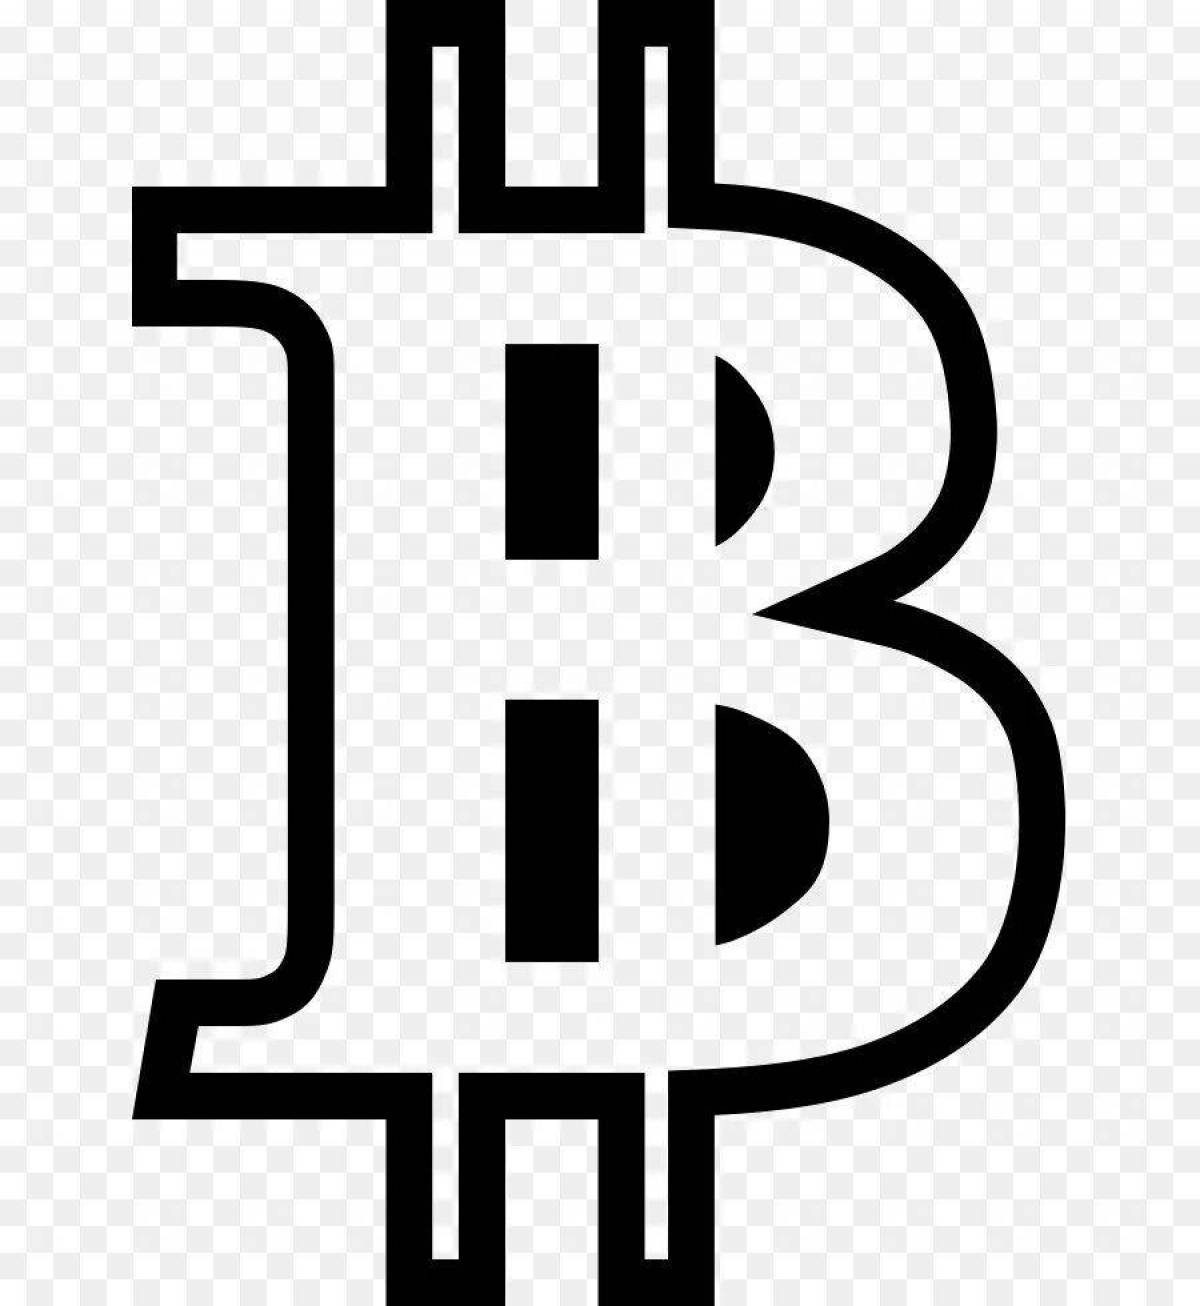 Bitcoin #7